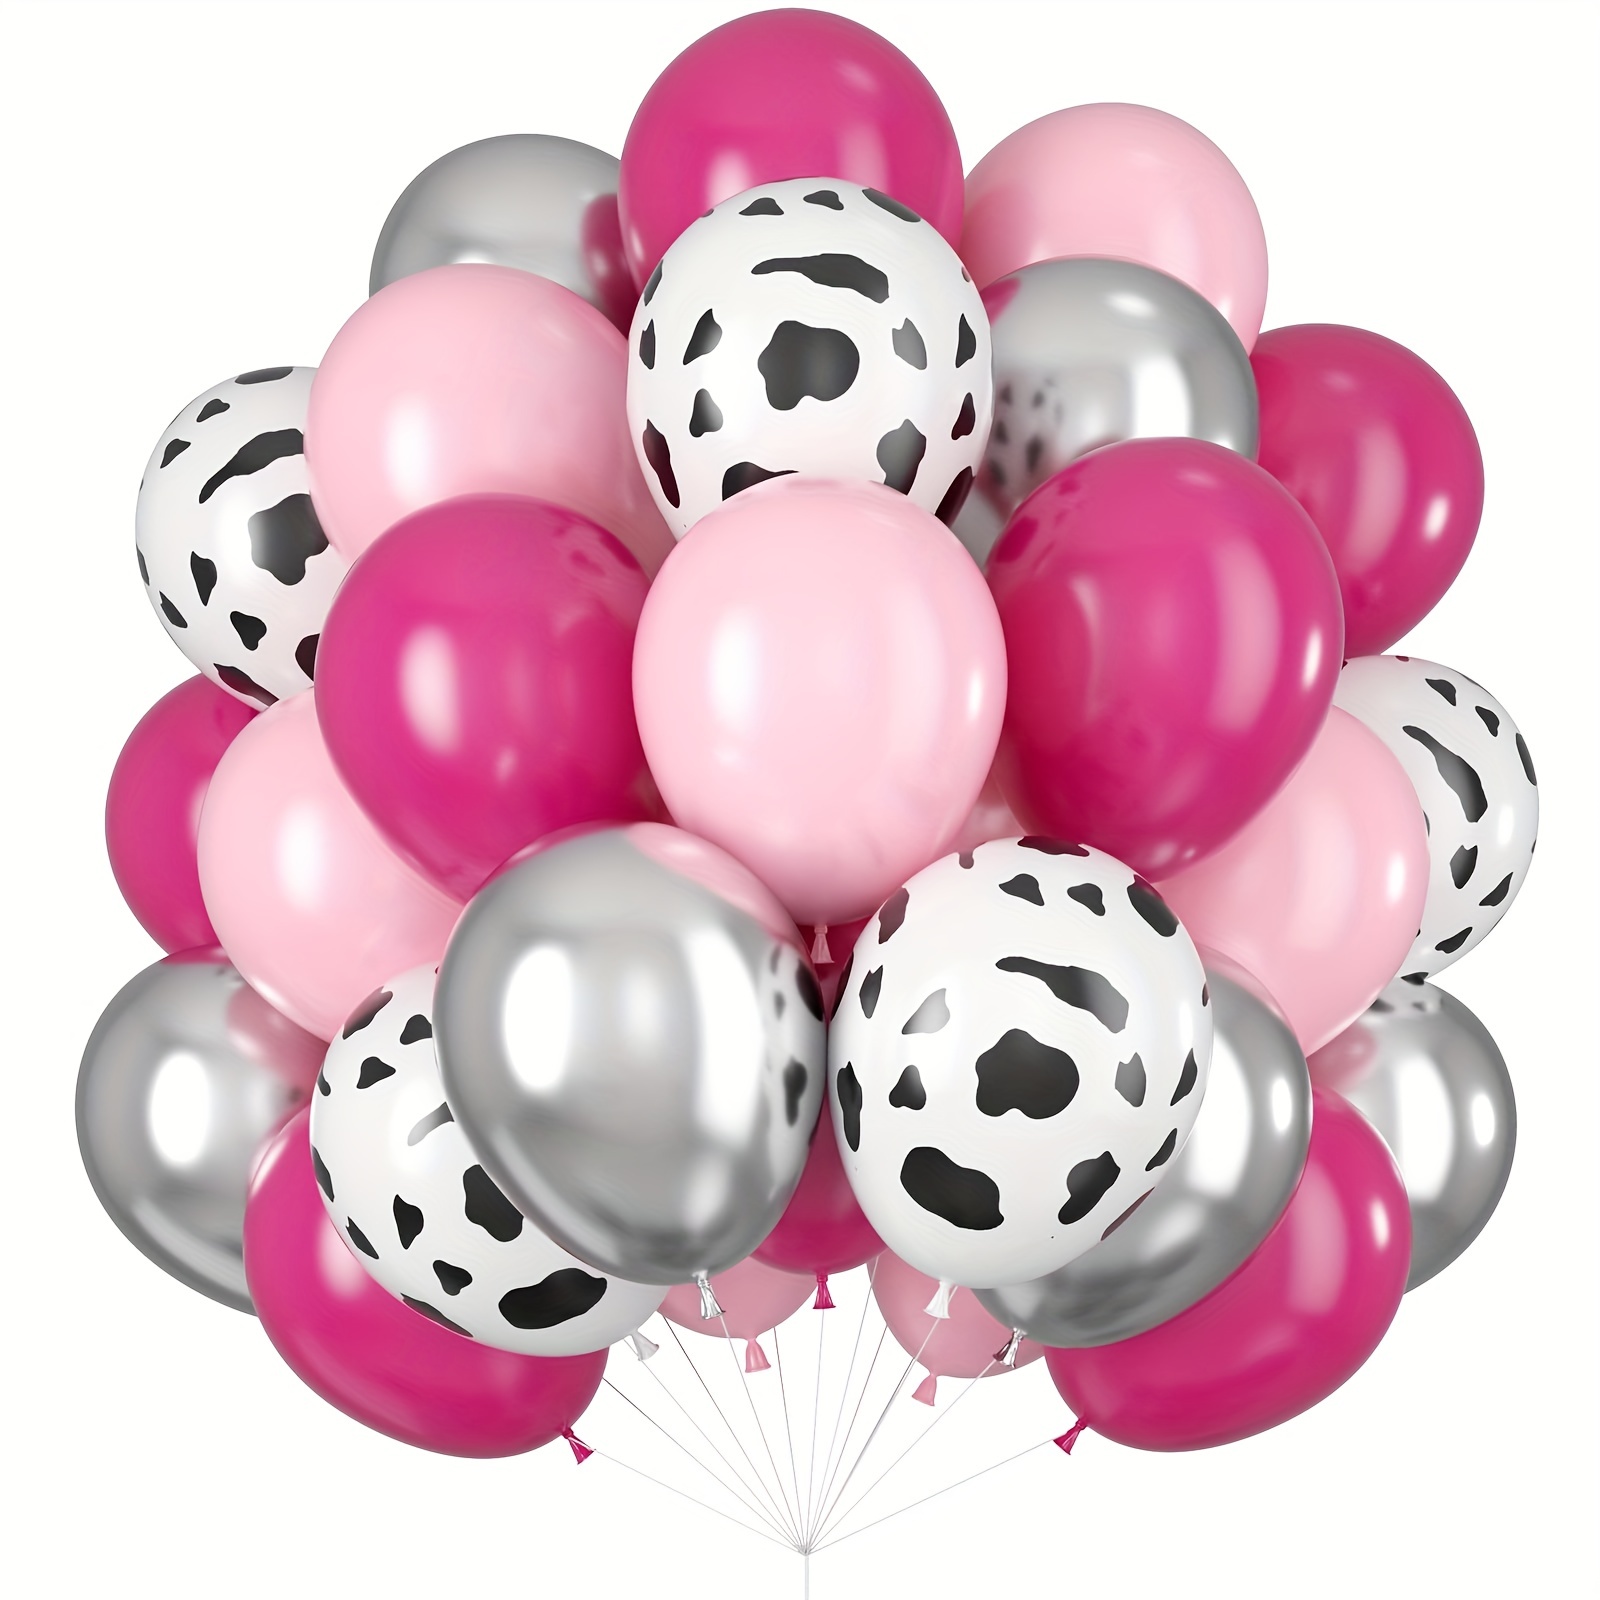 60 globos rosa y blanco, juego de globos de fiesta de 12 pulgadas de color  rosa claro y blanco con globos rojos metálicos, globos de látex de helio